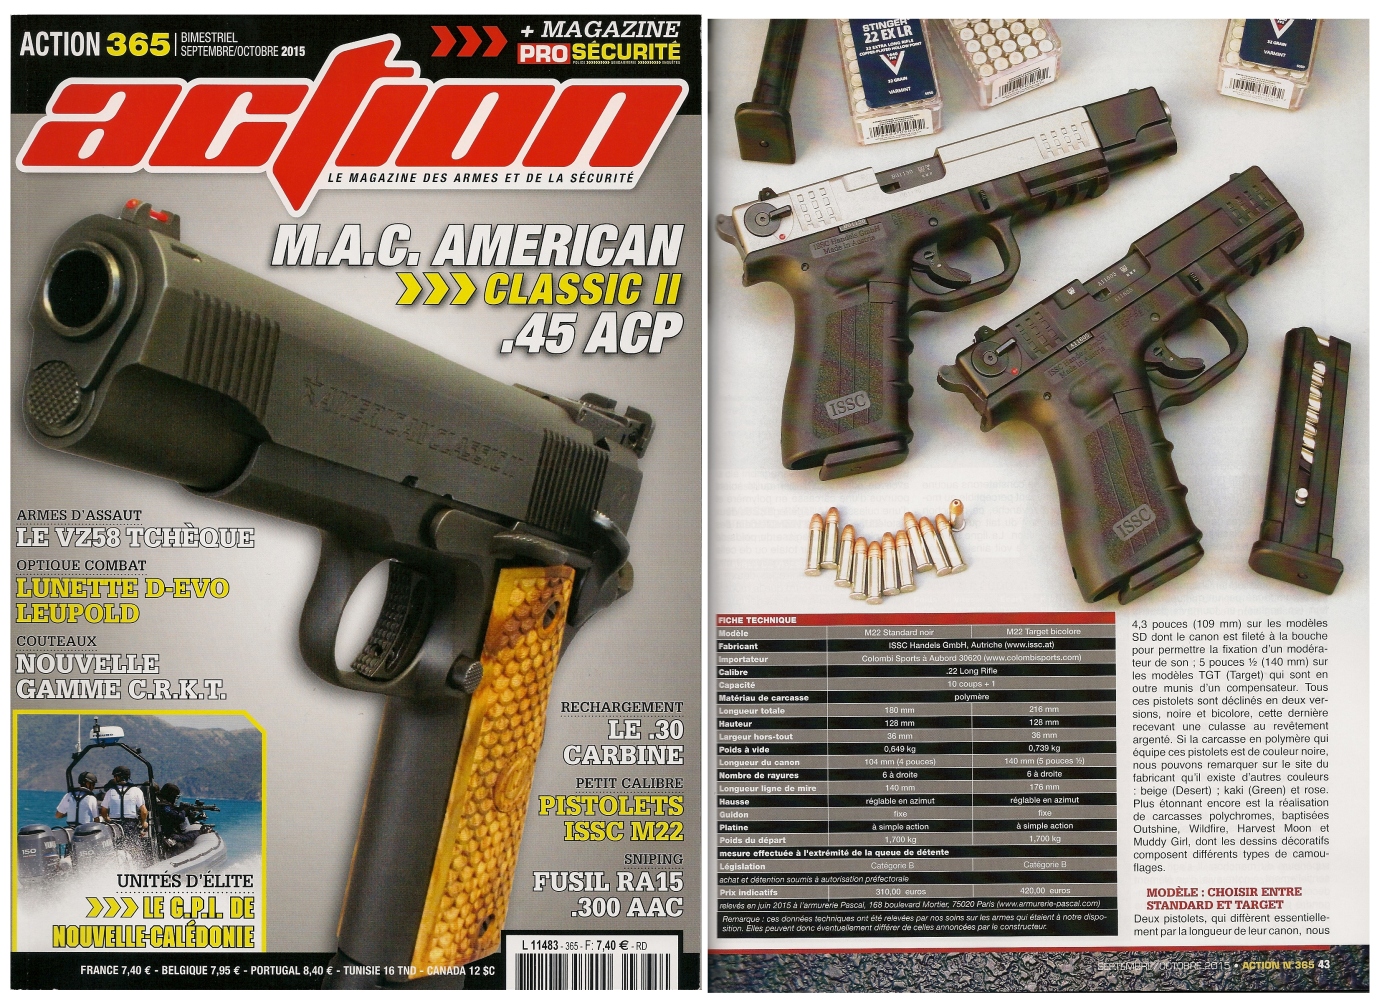 Le banc d'essai des pistolets ISSC M22 Standard & Target a été publié sur 6 pages dans le magazine Action n°365 (septembre-octobre 2015). 